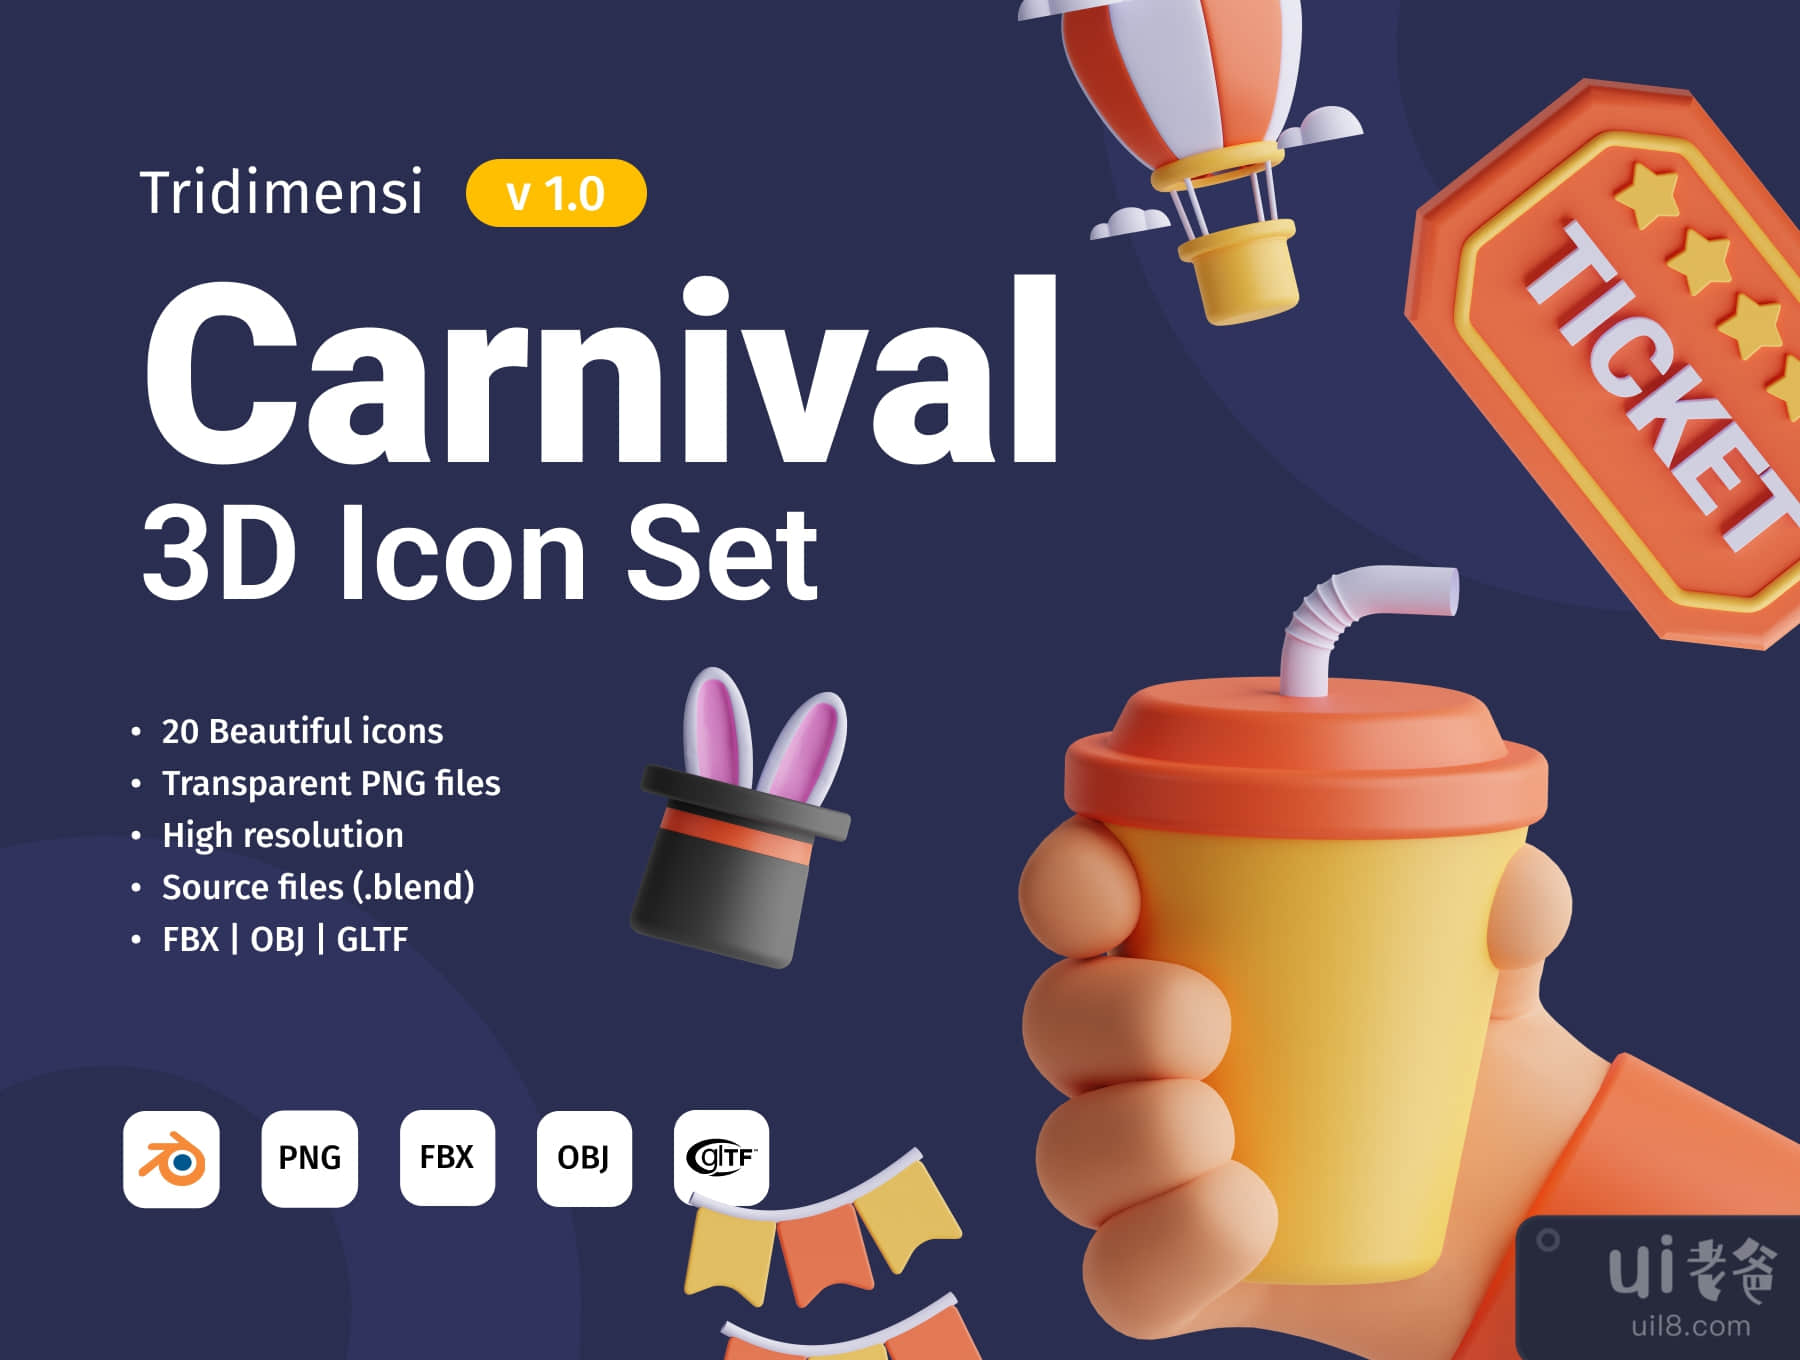 狂欢节3D图标集 (Carnival 3D Icon Set)插图